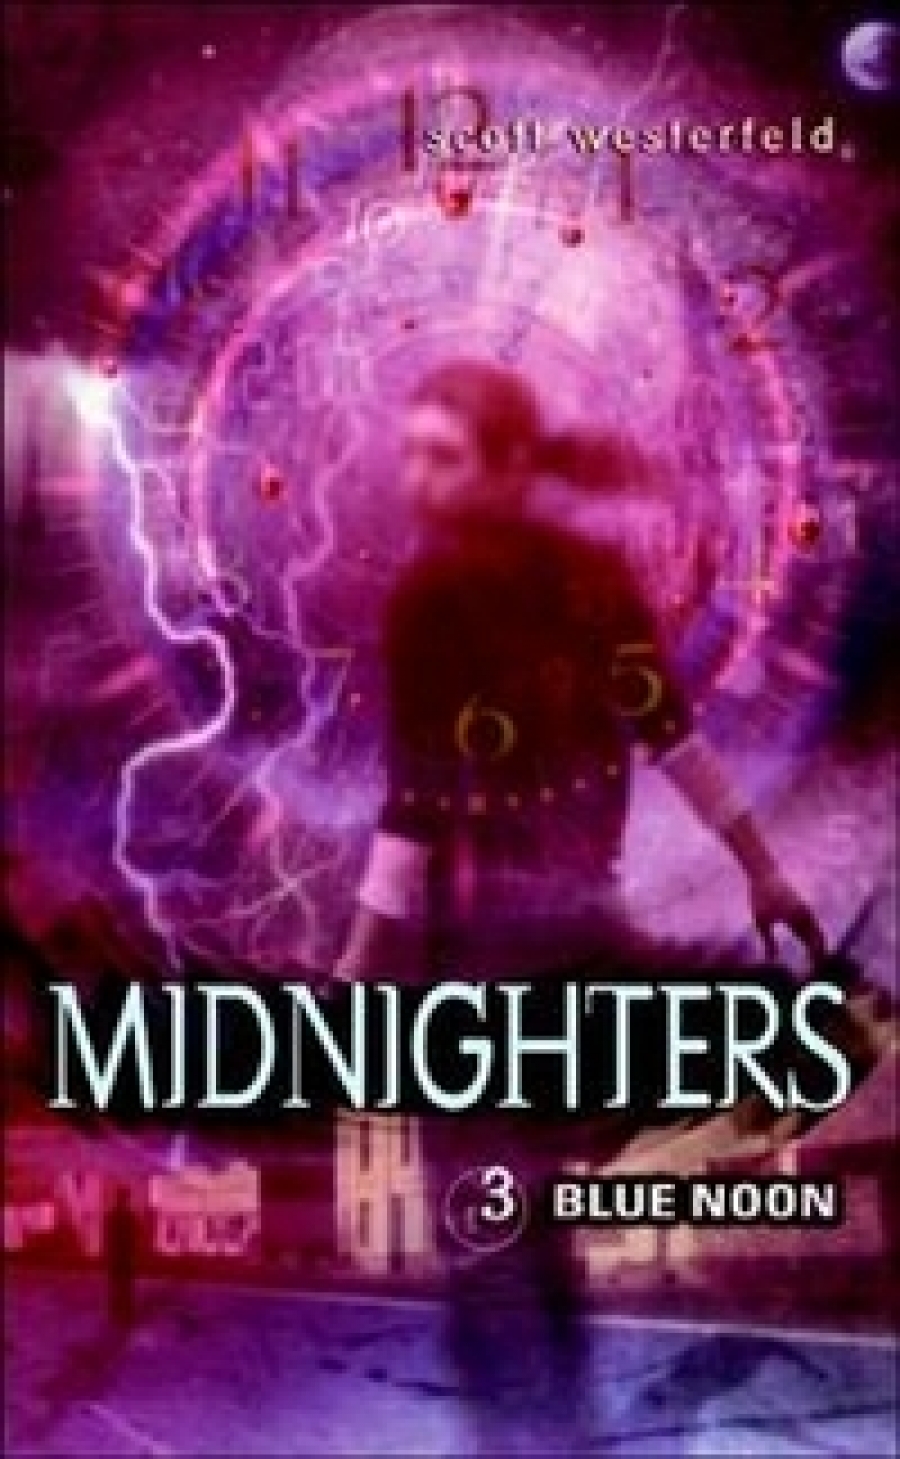 Scott W. Midnighters 3: Blue Noon 